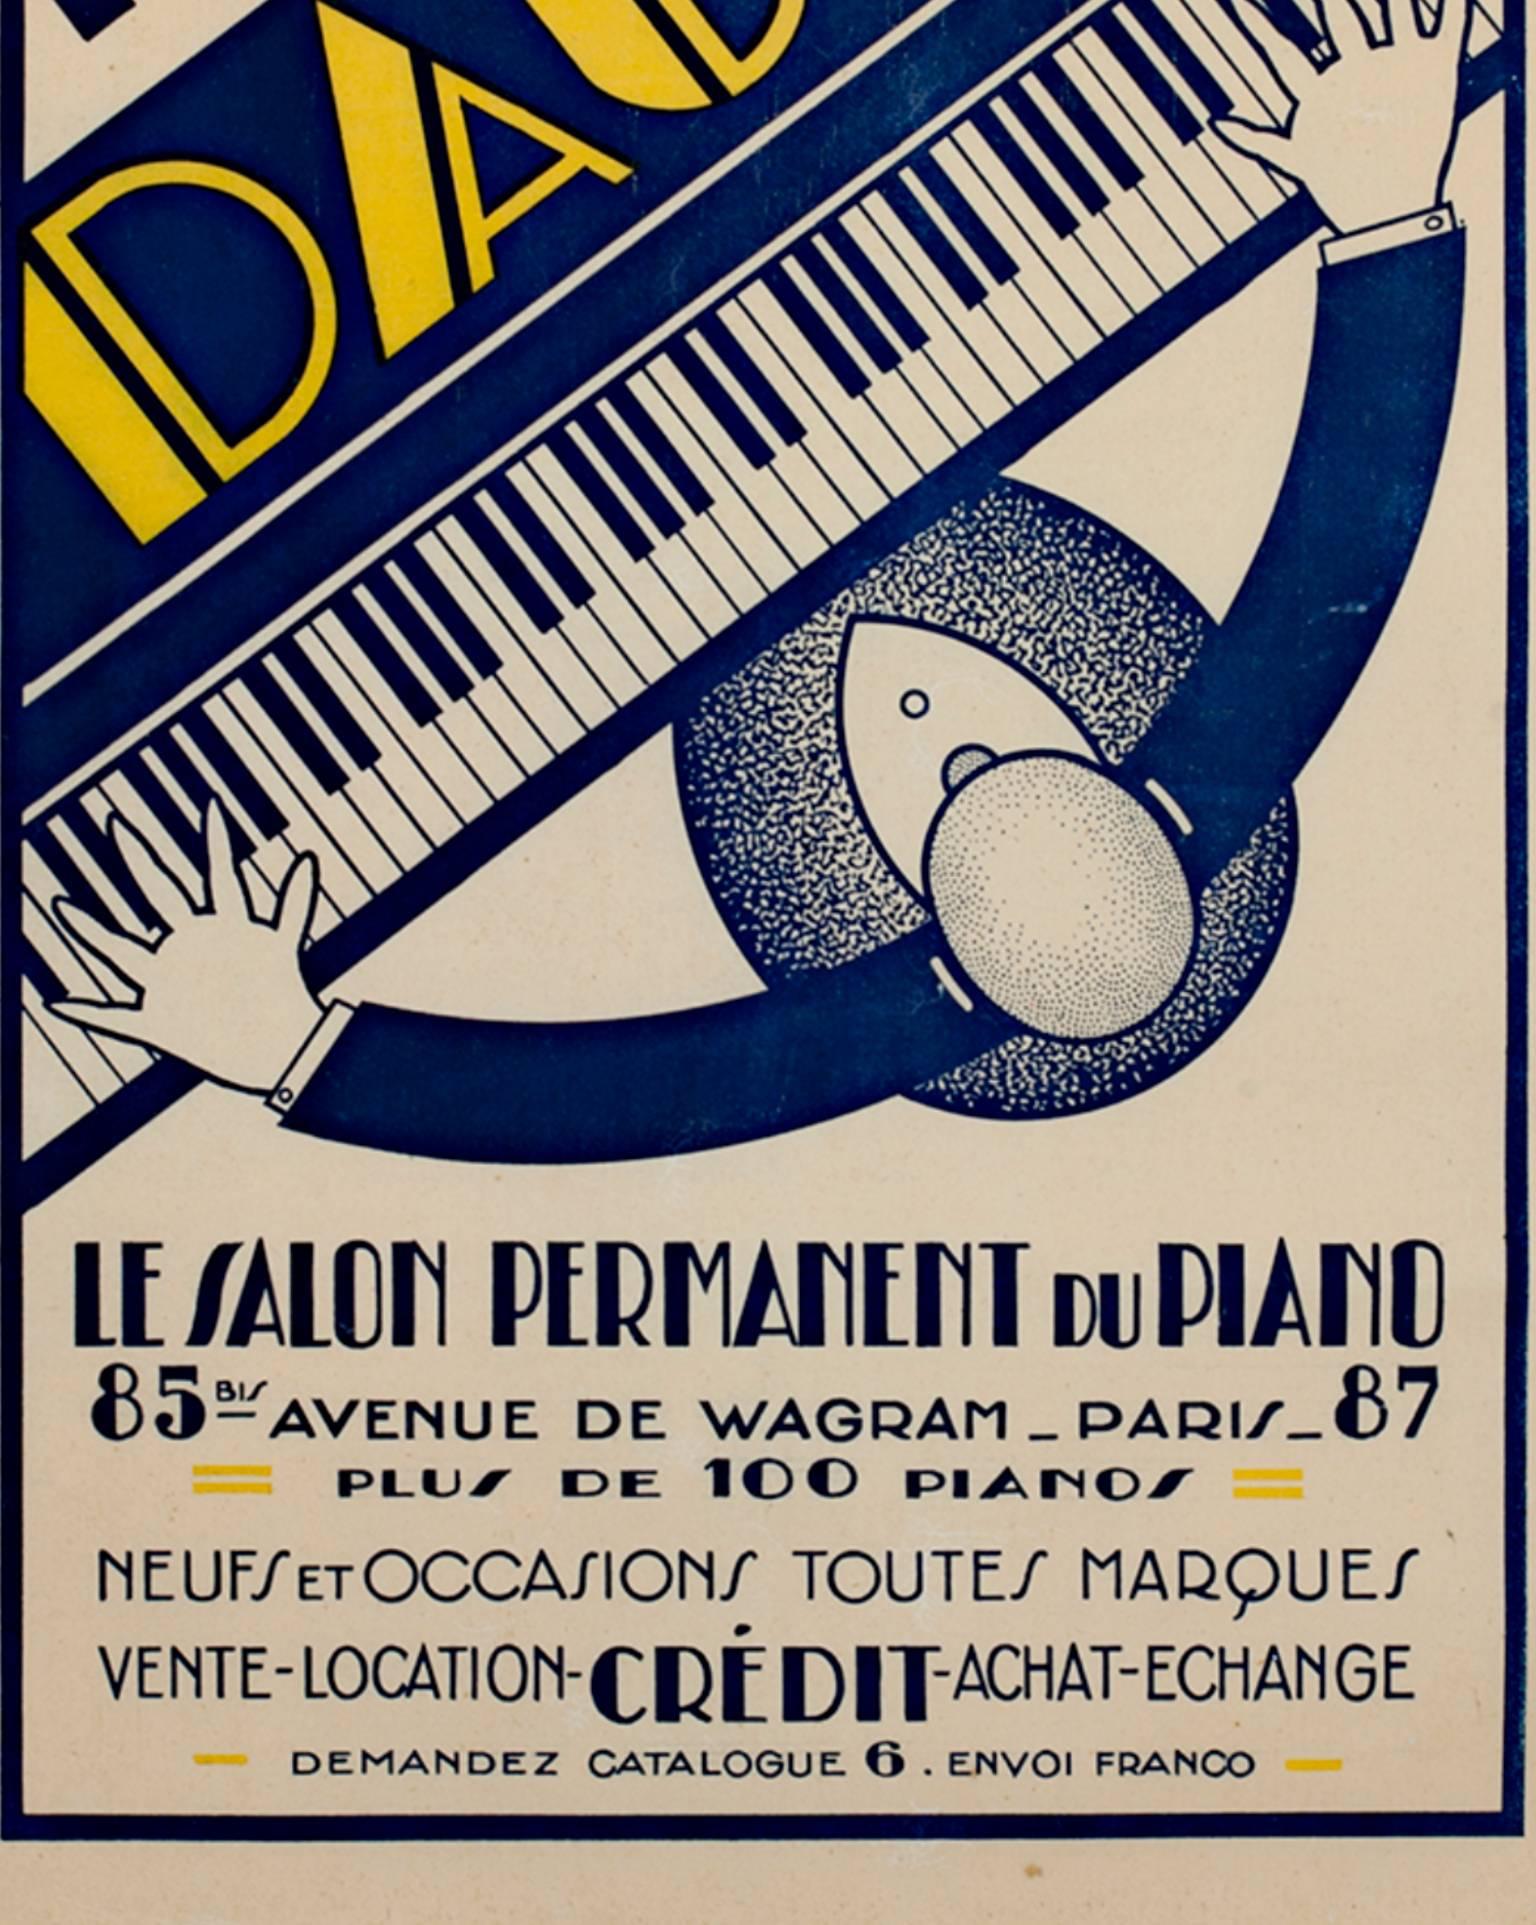 pianos daude poster original